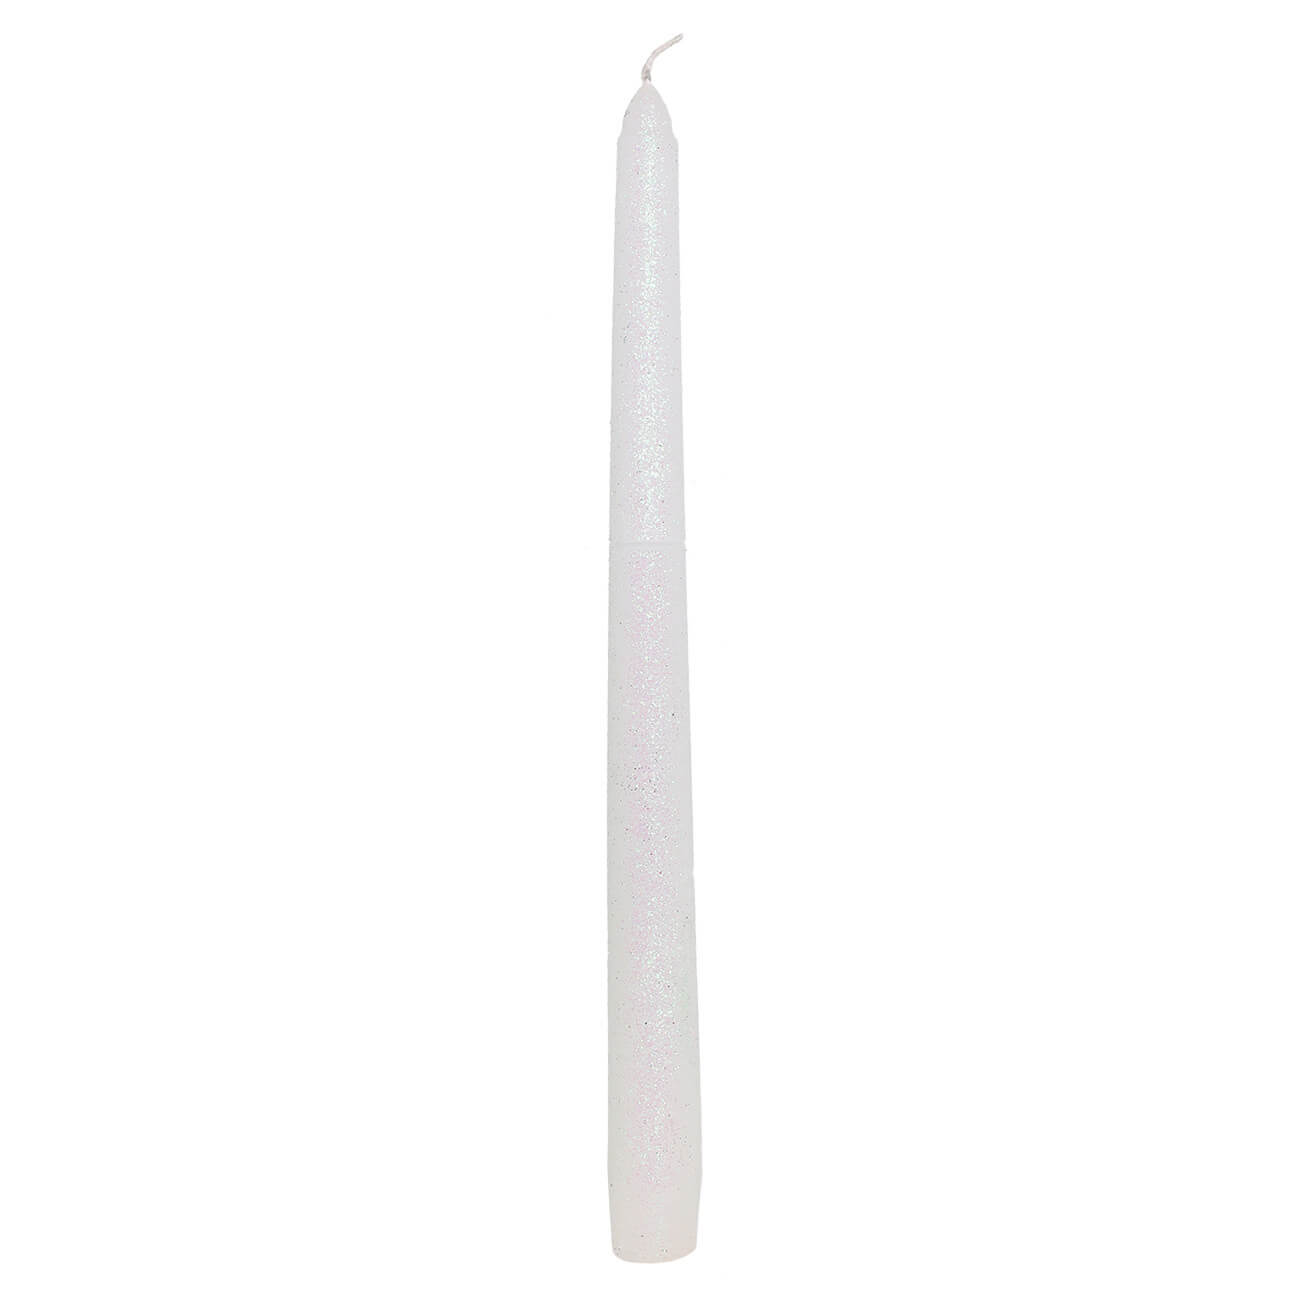 Свеча, 25 см, тонкая, белая, Metallic glow свеча фигурная влюбленные 12 см белая